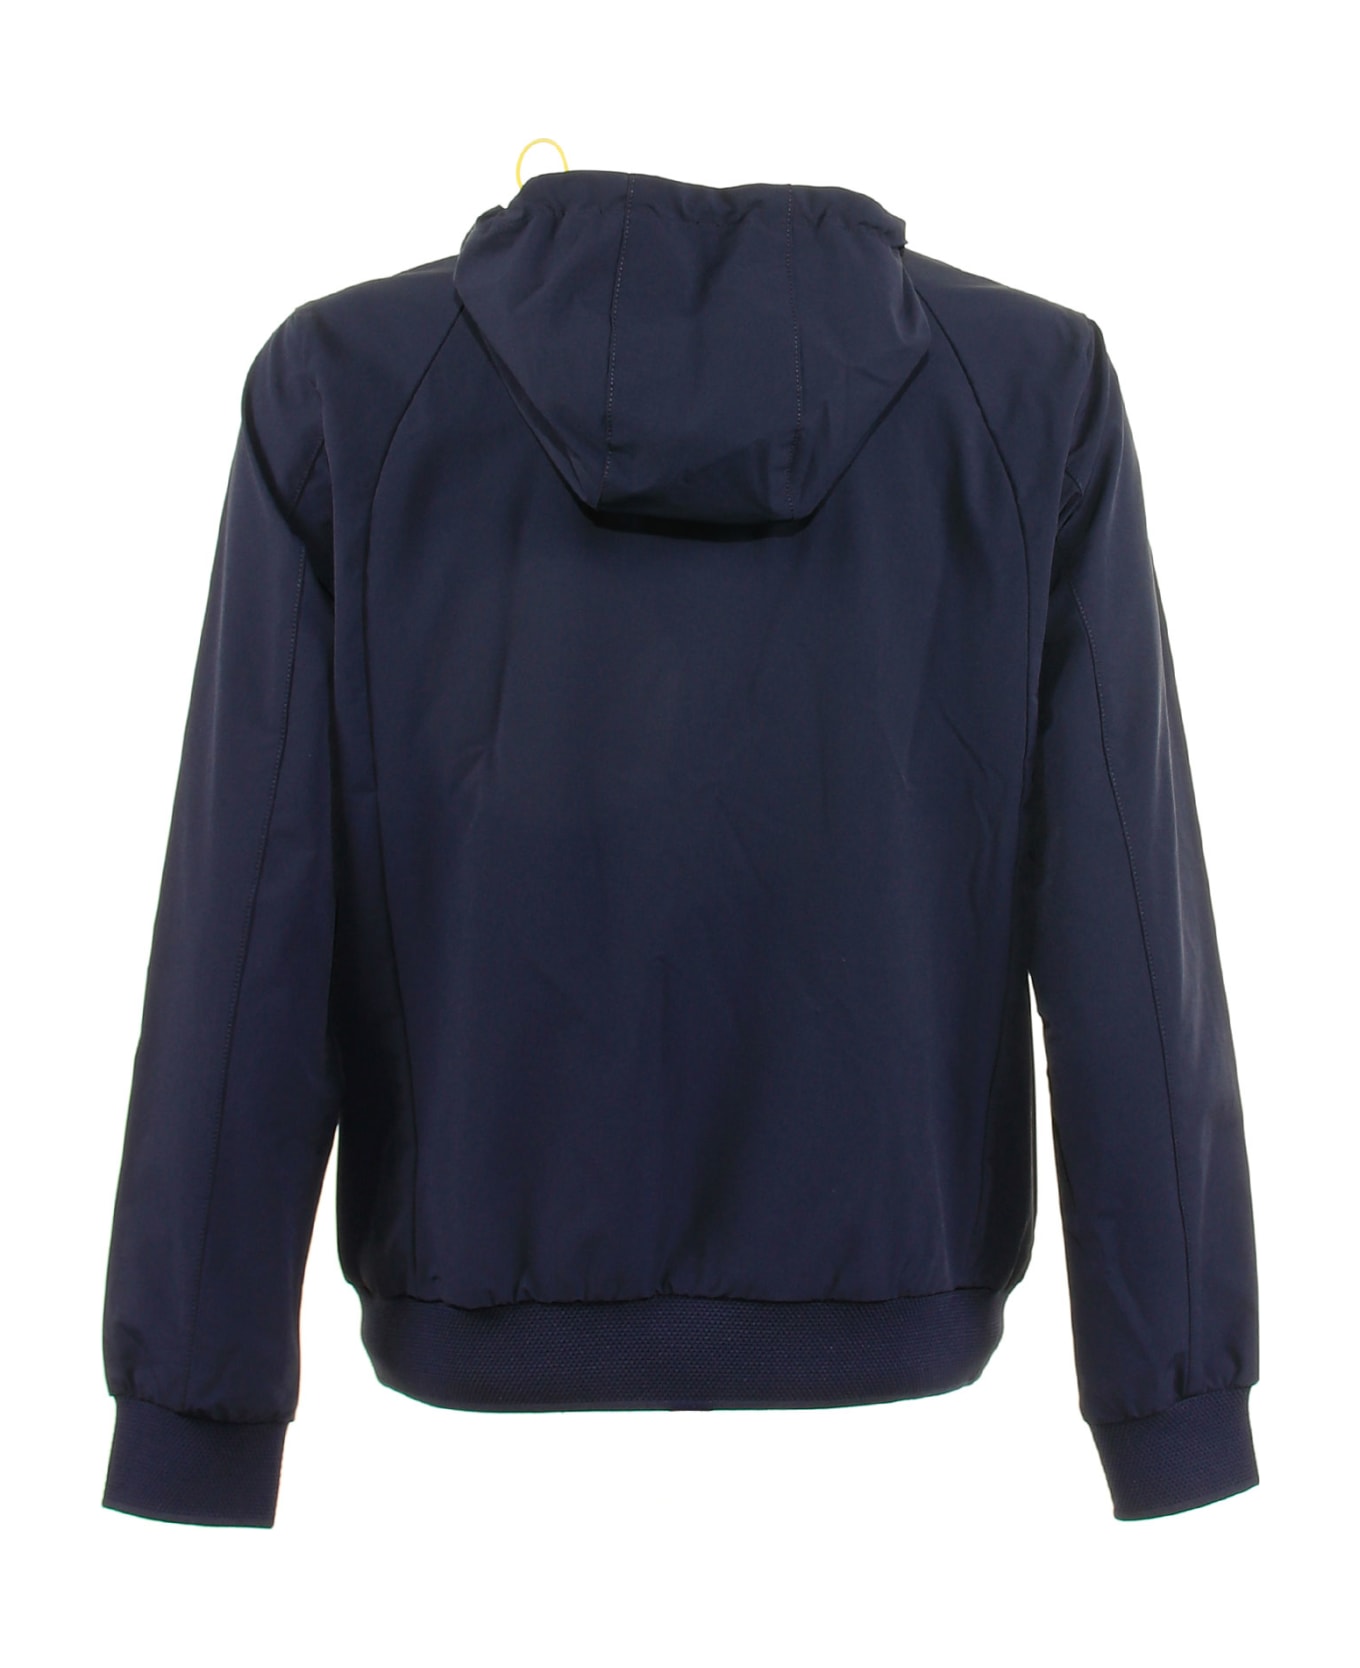 People Of Shibuya Dark Blue Technical Fabric Jacket - NAVY BLUE ジャケット